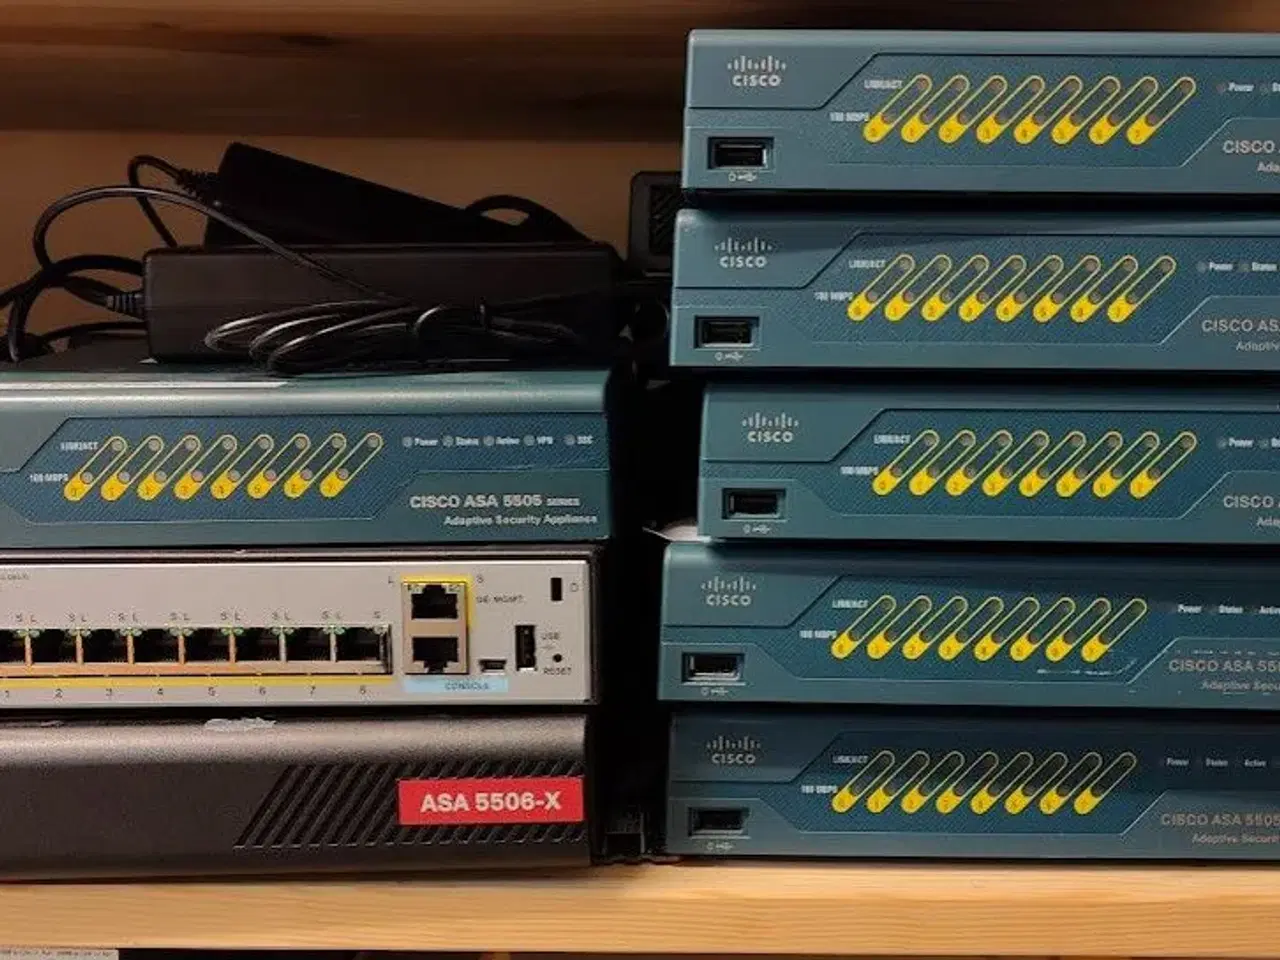 Billede 1 - Firewall, Cisco ASA 5505 og 5506-X